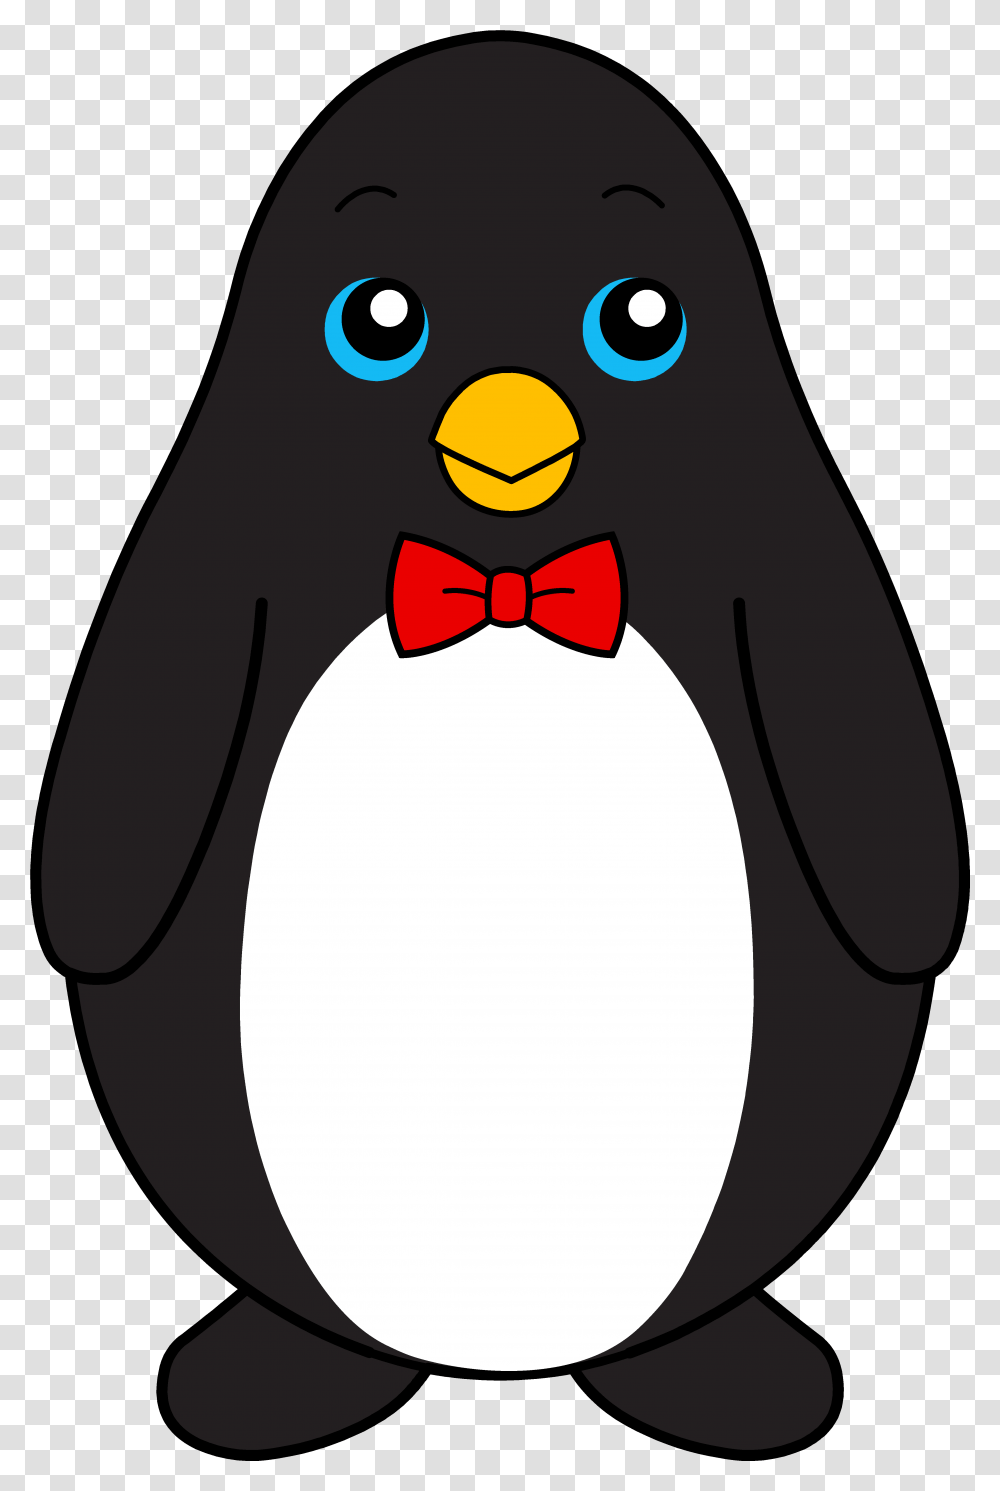 Download Penguinspngtransparentimagestransparent, Bird, Animal, King Penguin Transparent Png